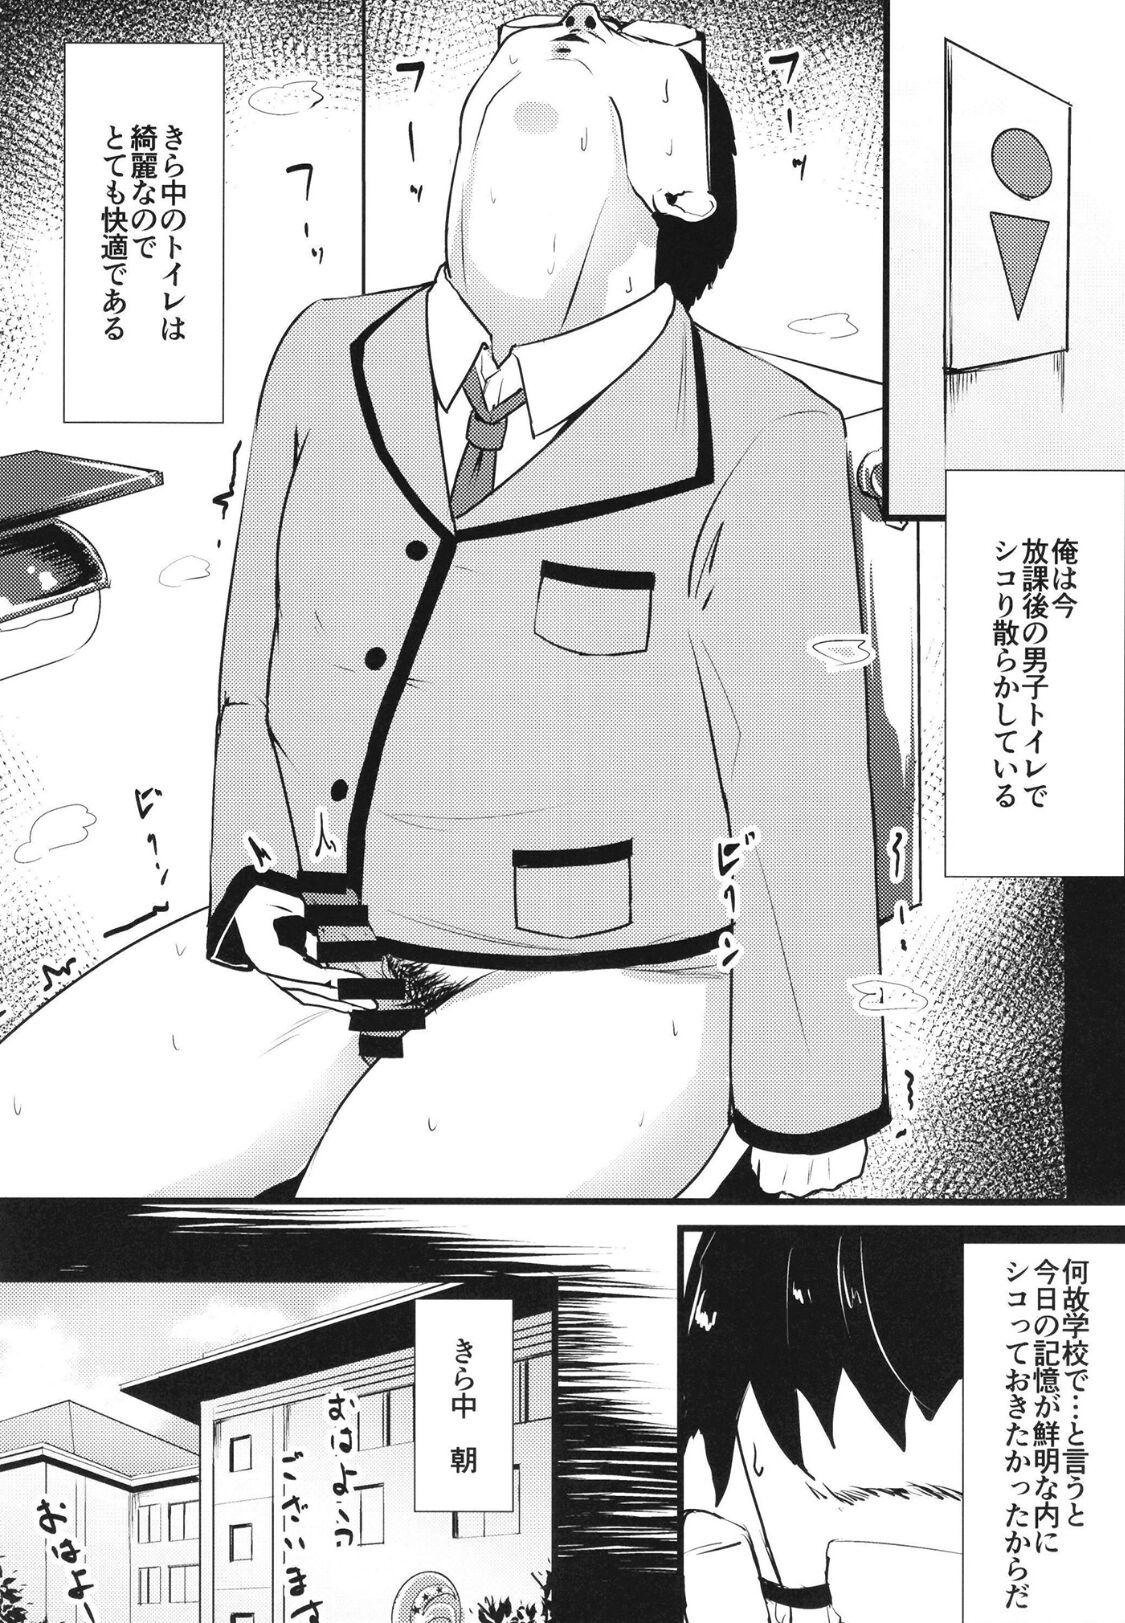 Rebolando Uchi no Class no Pri-Chan Idol Zenin Okasu Jiken - Kiratto pri chan Brazil - Page 3